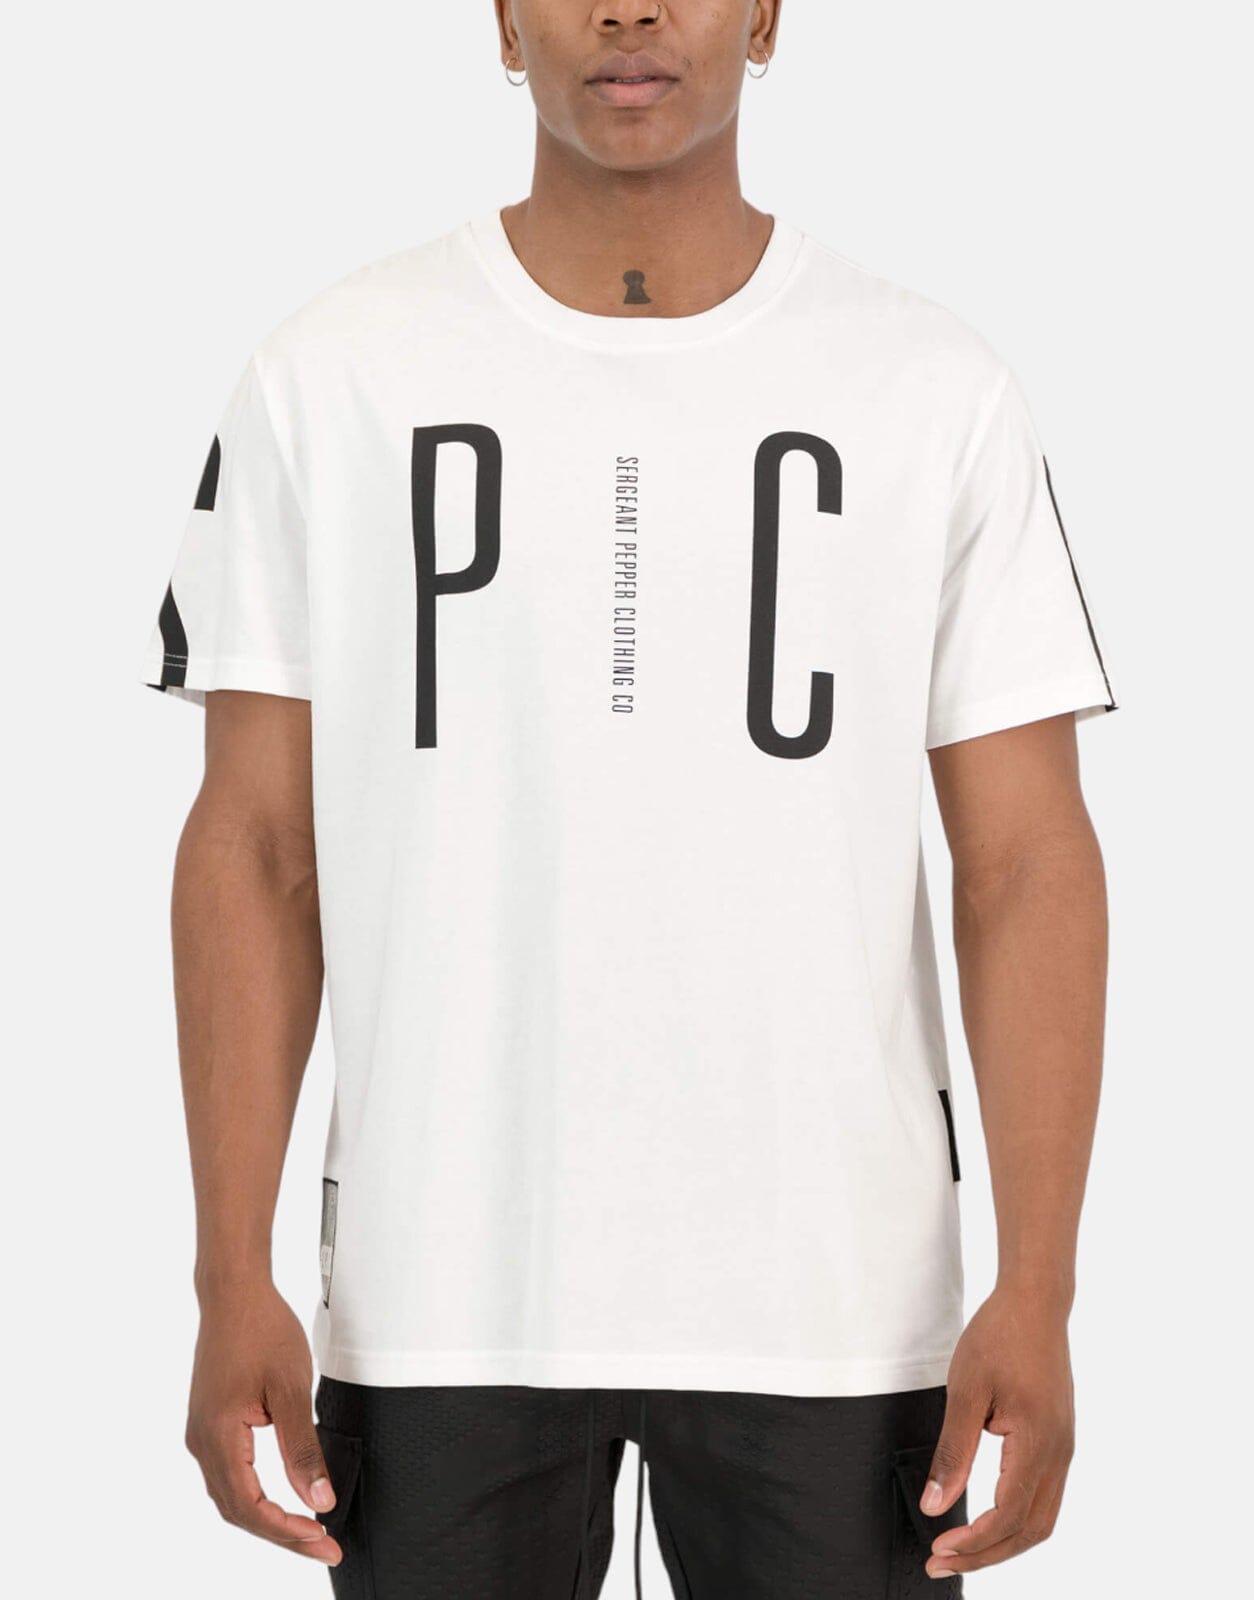 SPCC Devlin White T-Shirt, M / White